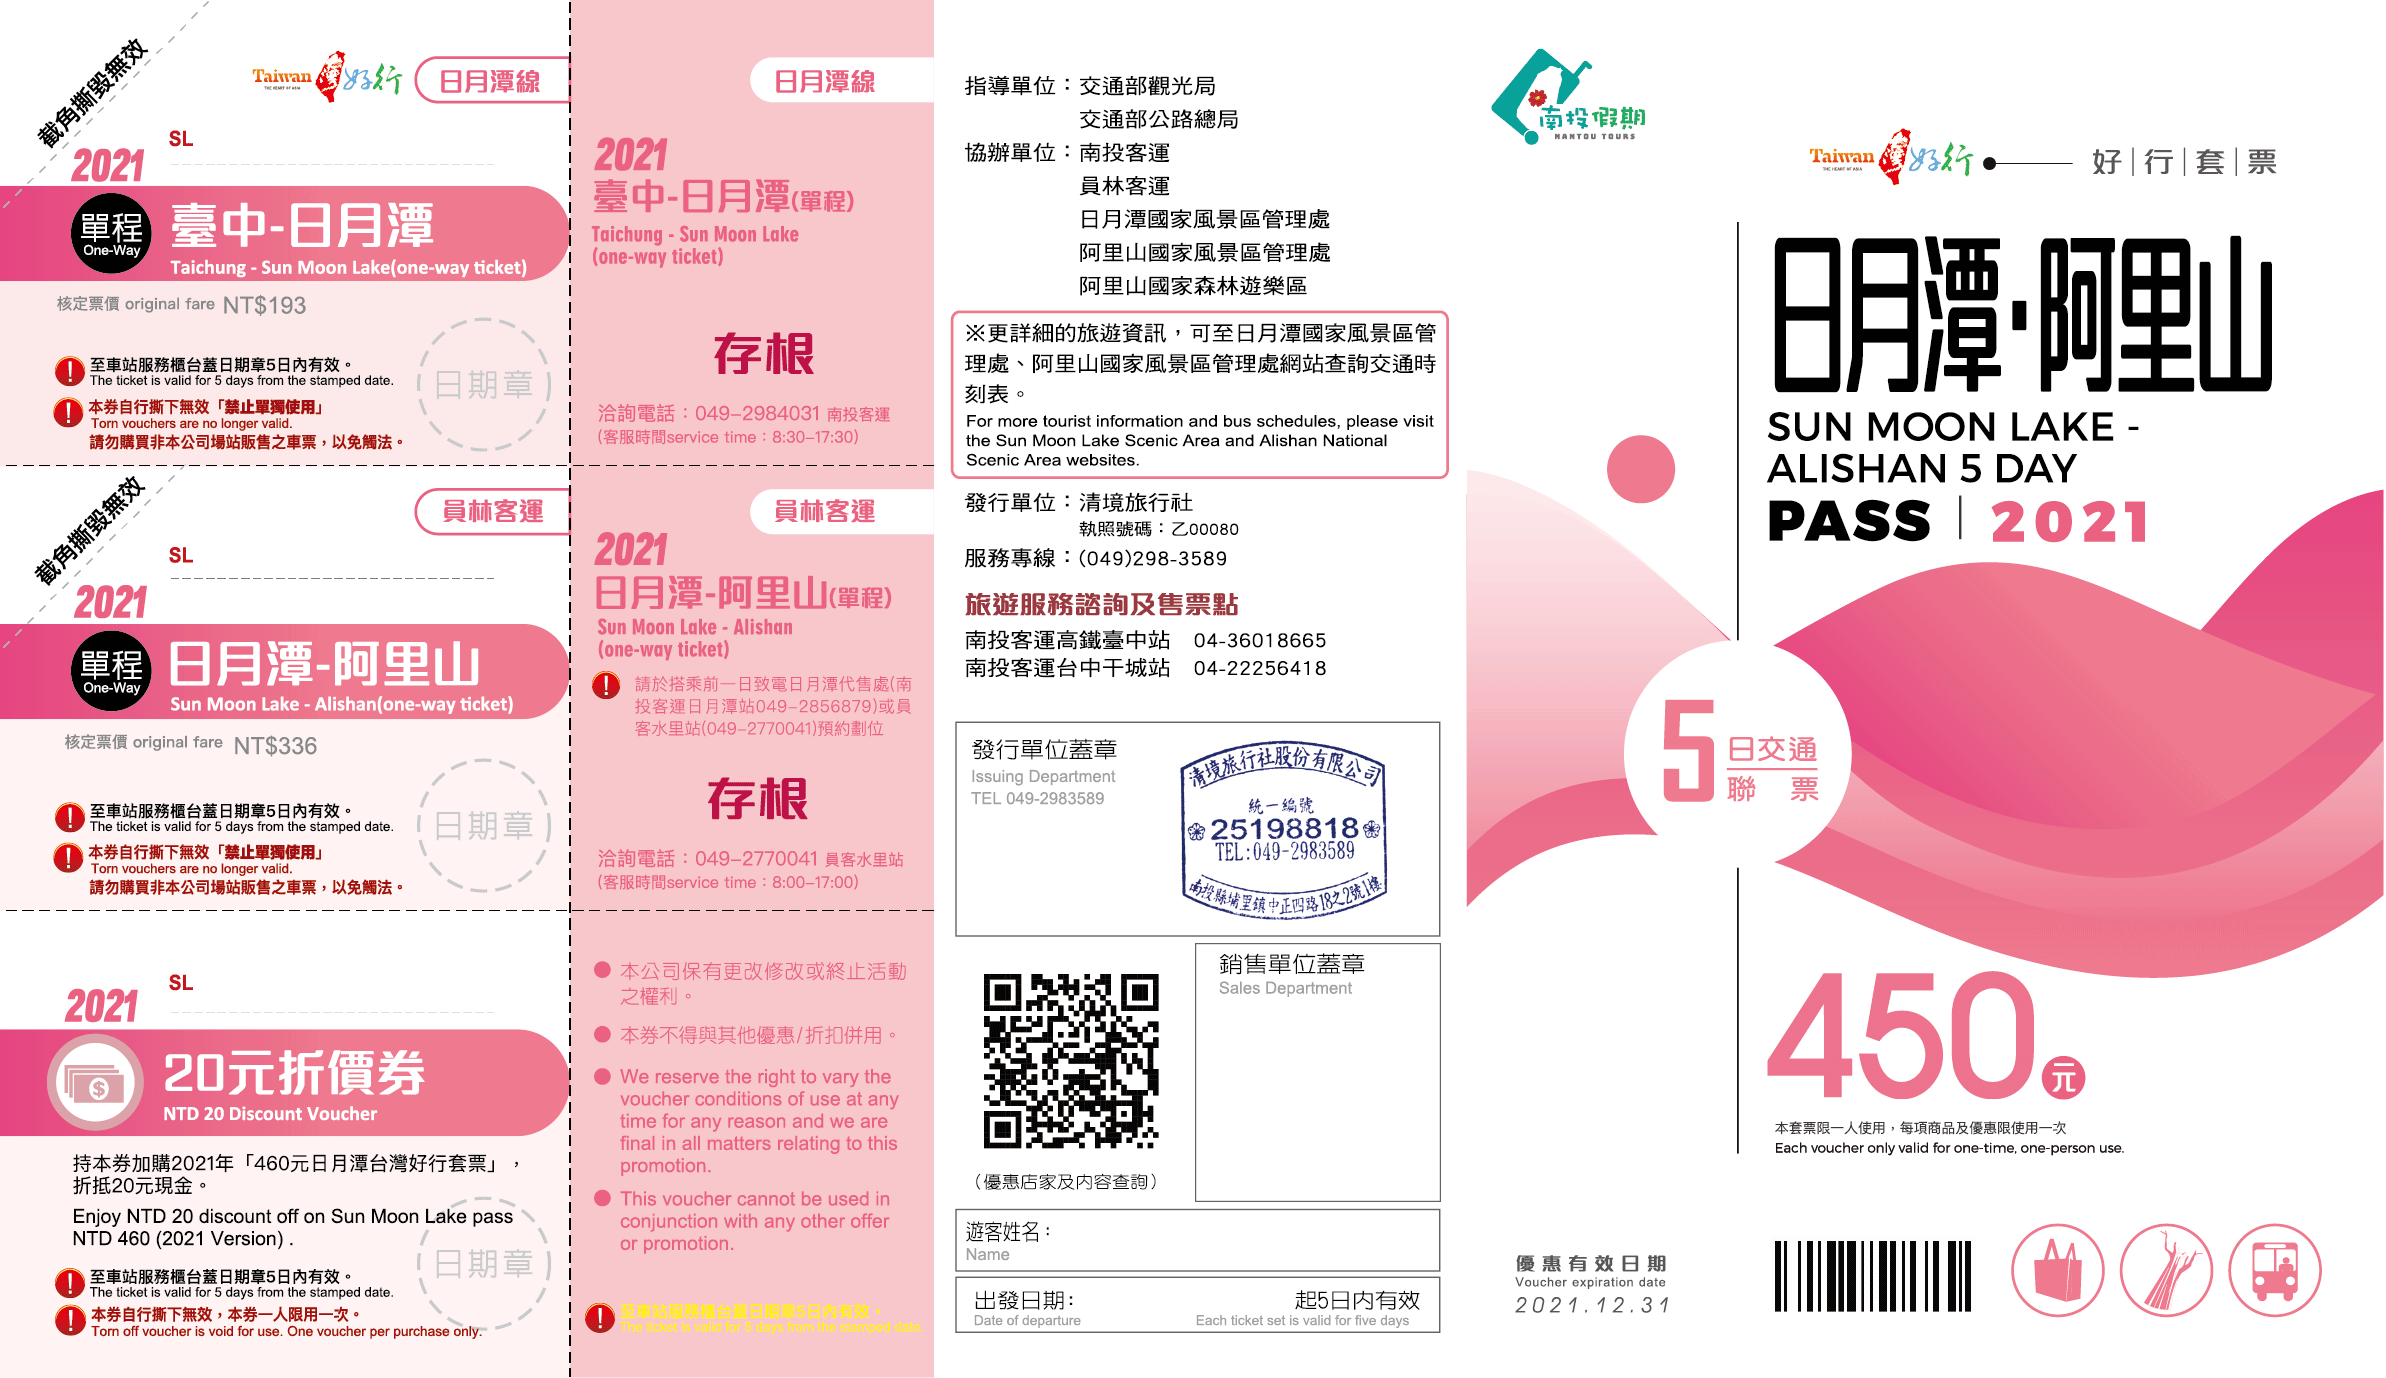 【日月潭線】450元日月潭阿里山五日交通聯票套票(2022)